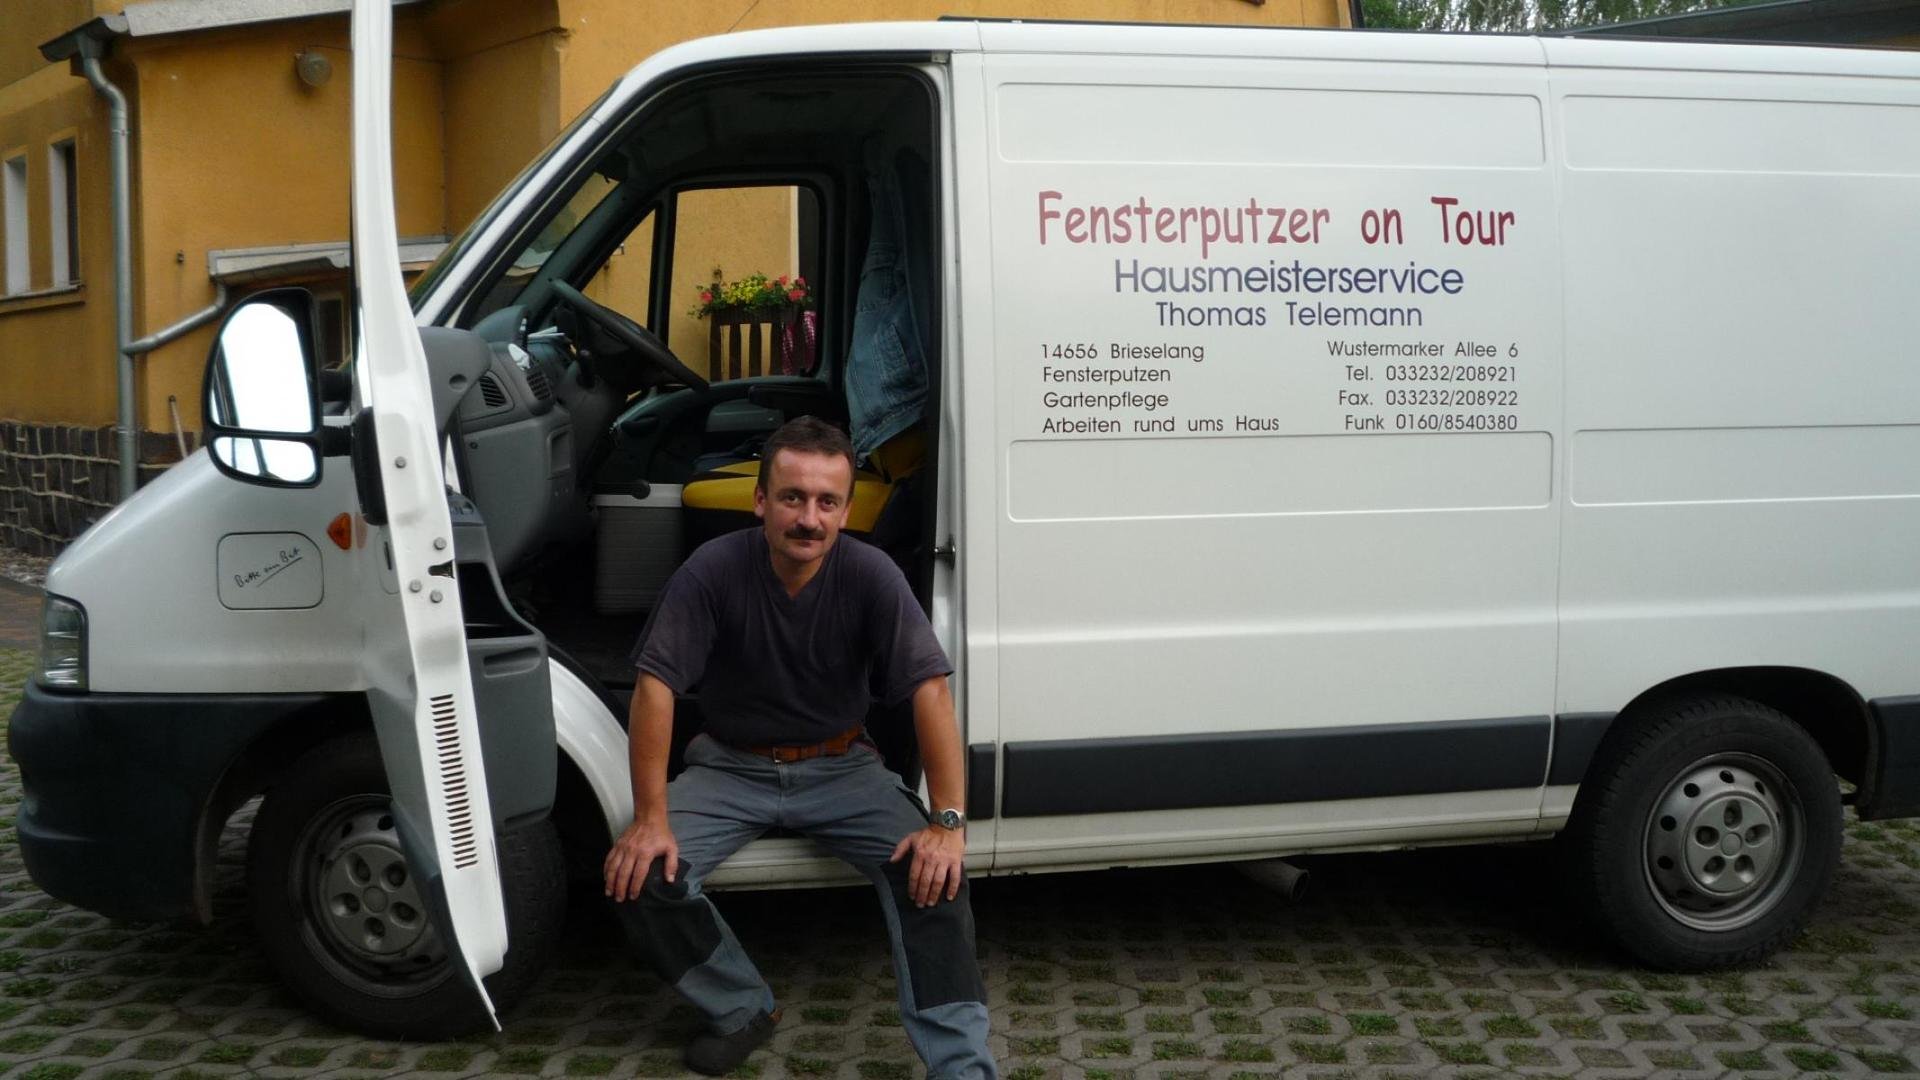 Fensterputzer on Tour Logo